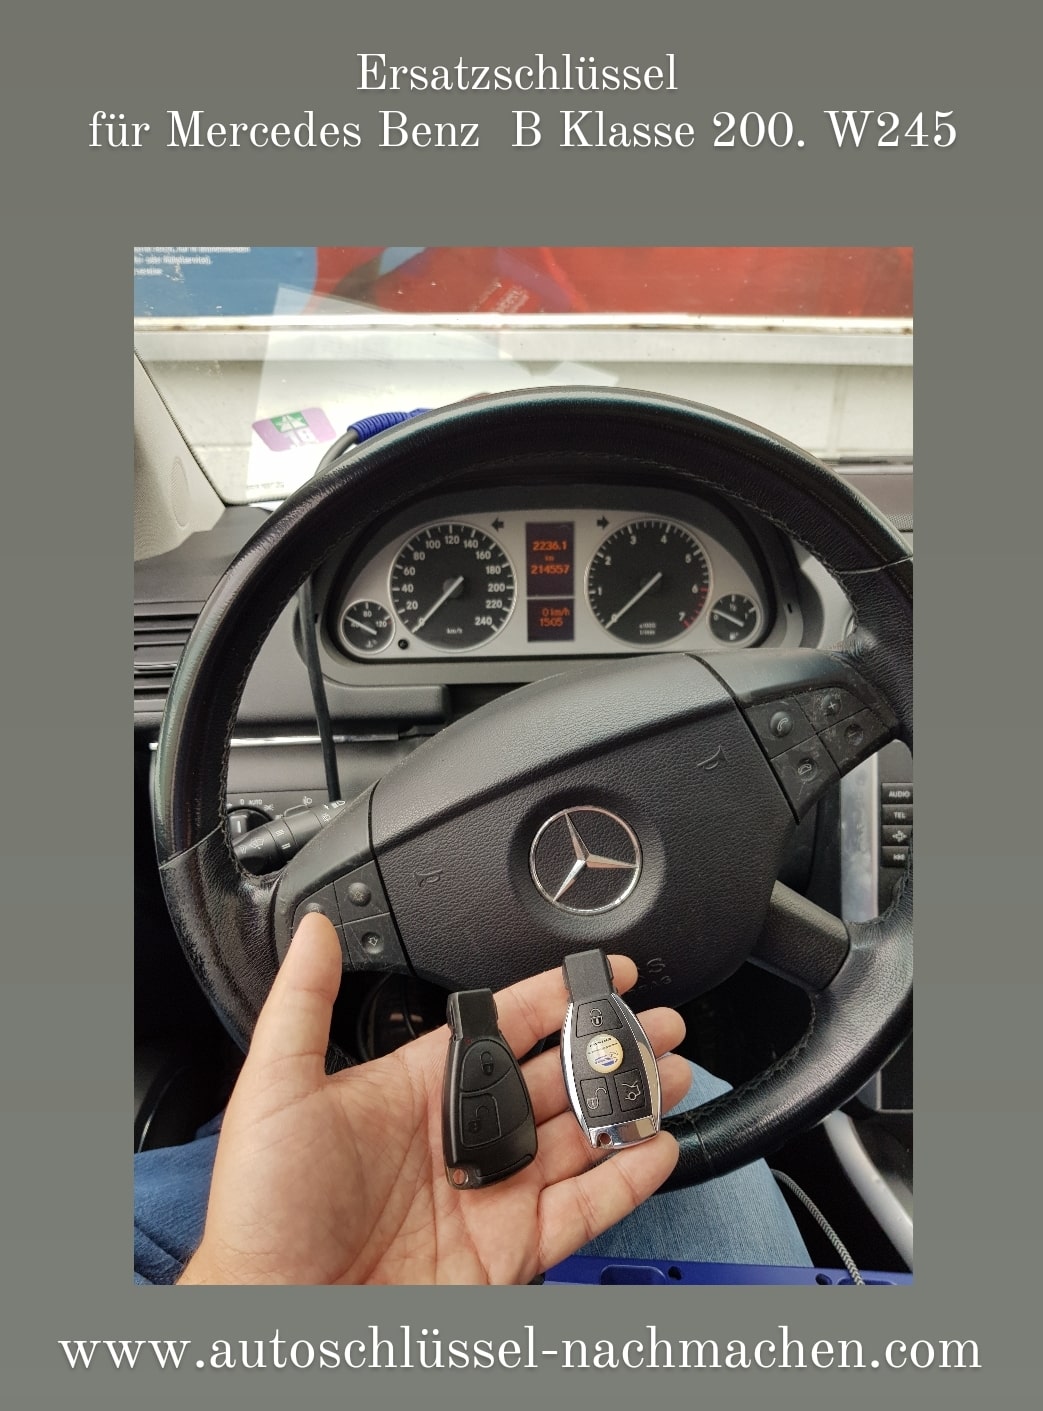 Schlüssel für Mercedes in nachmachen lassen